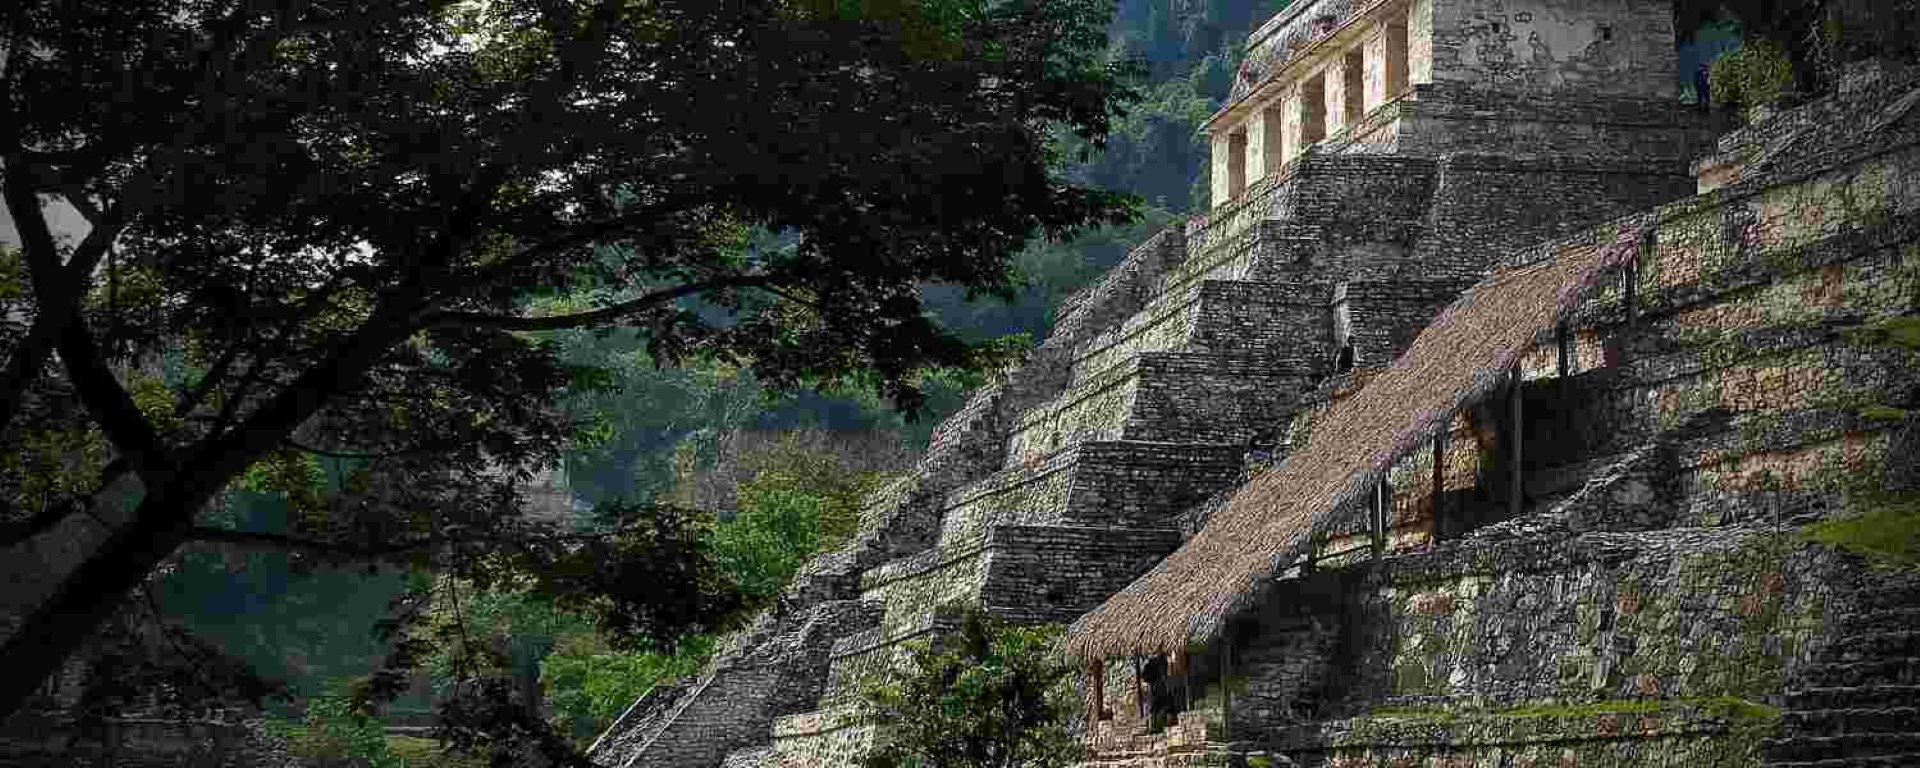 palenque_maya_yucatan_mexico_vakantie_belize_huurauto_treasury_travel